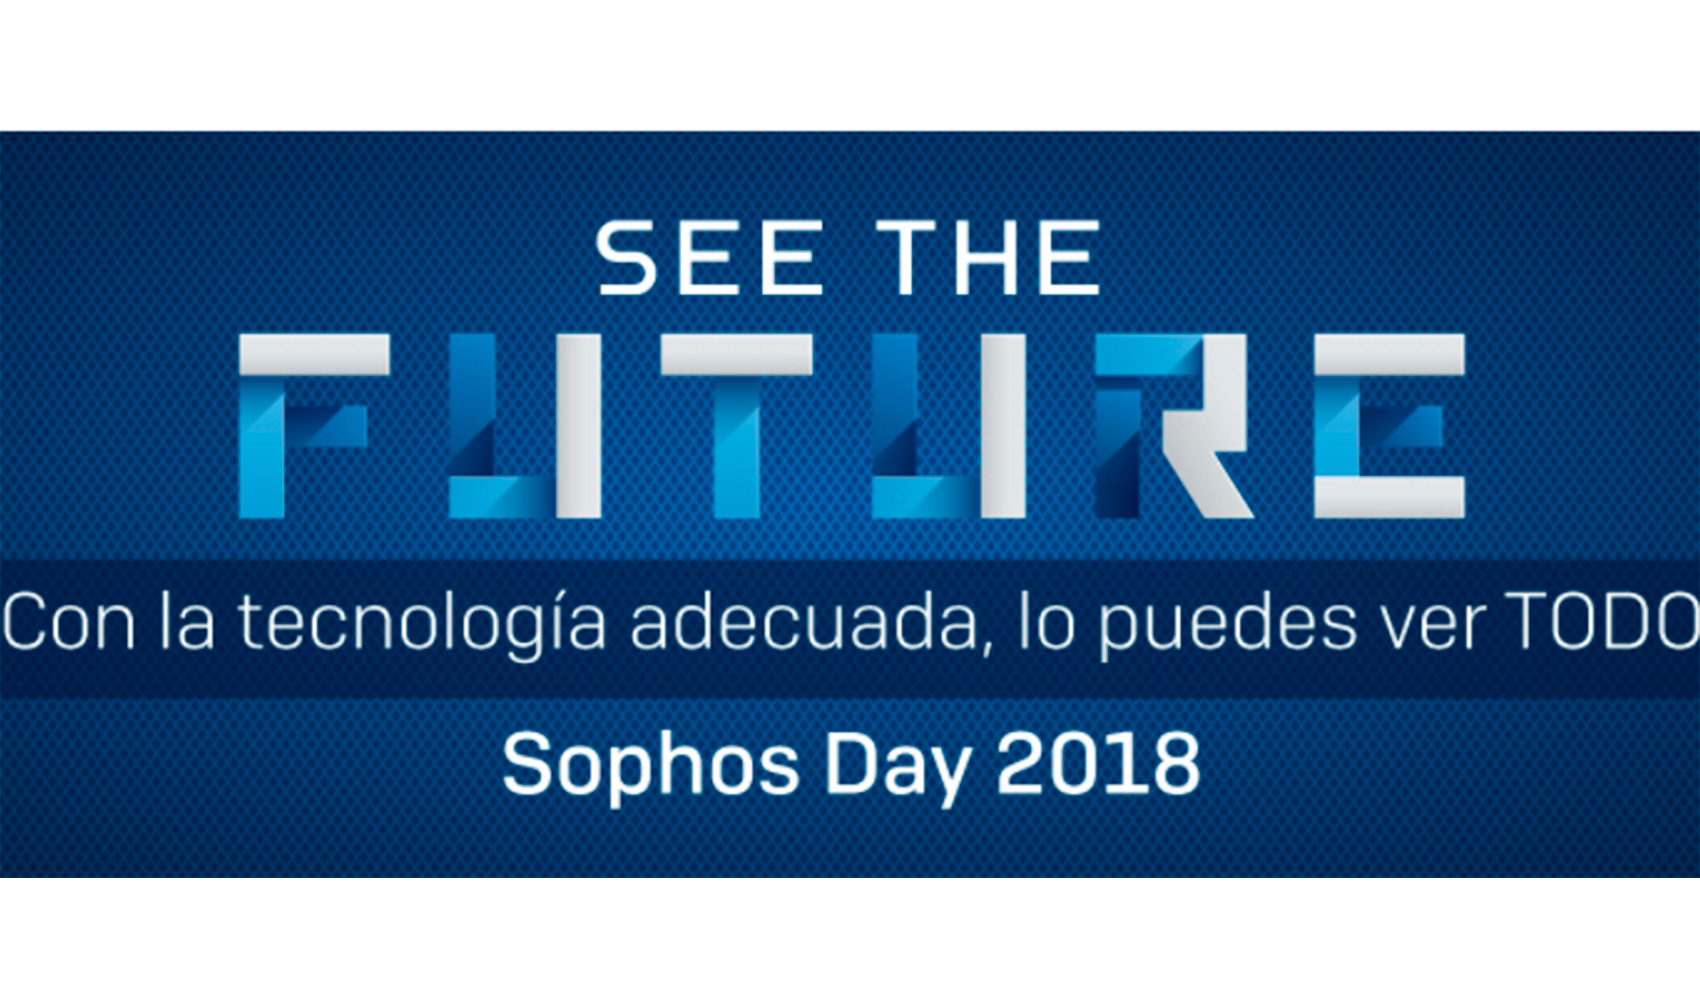 Sophos Day 2018 desvelará las nuevas ciberamenazas en España y su impacto en los dispositivos móviles